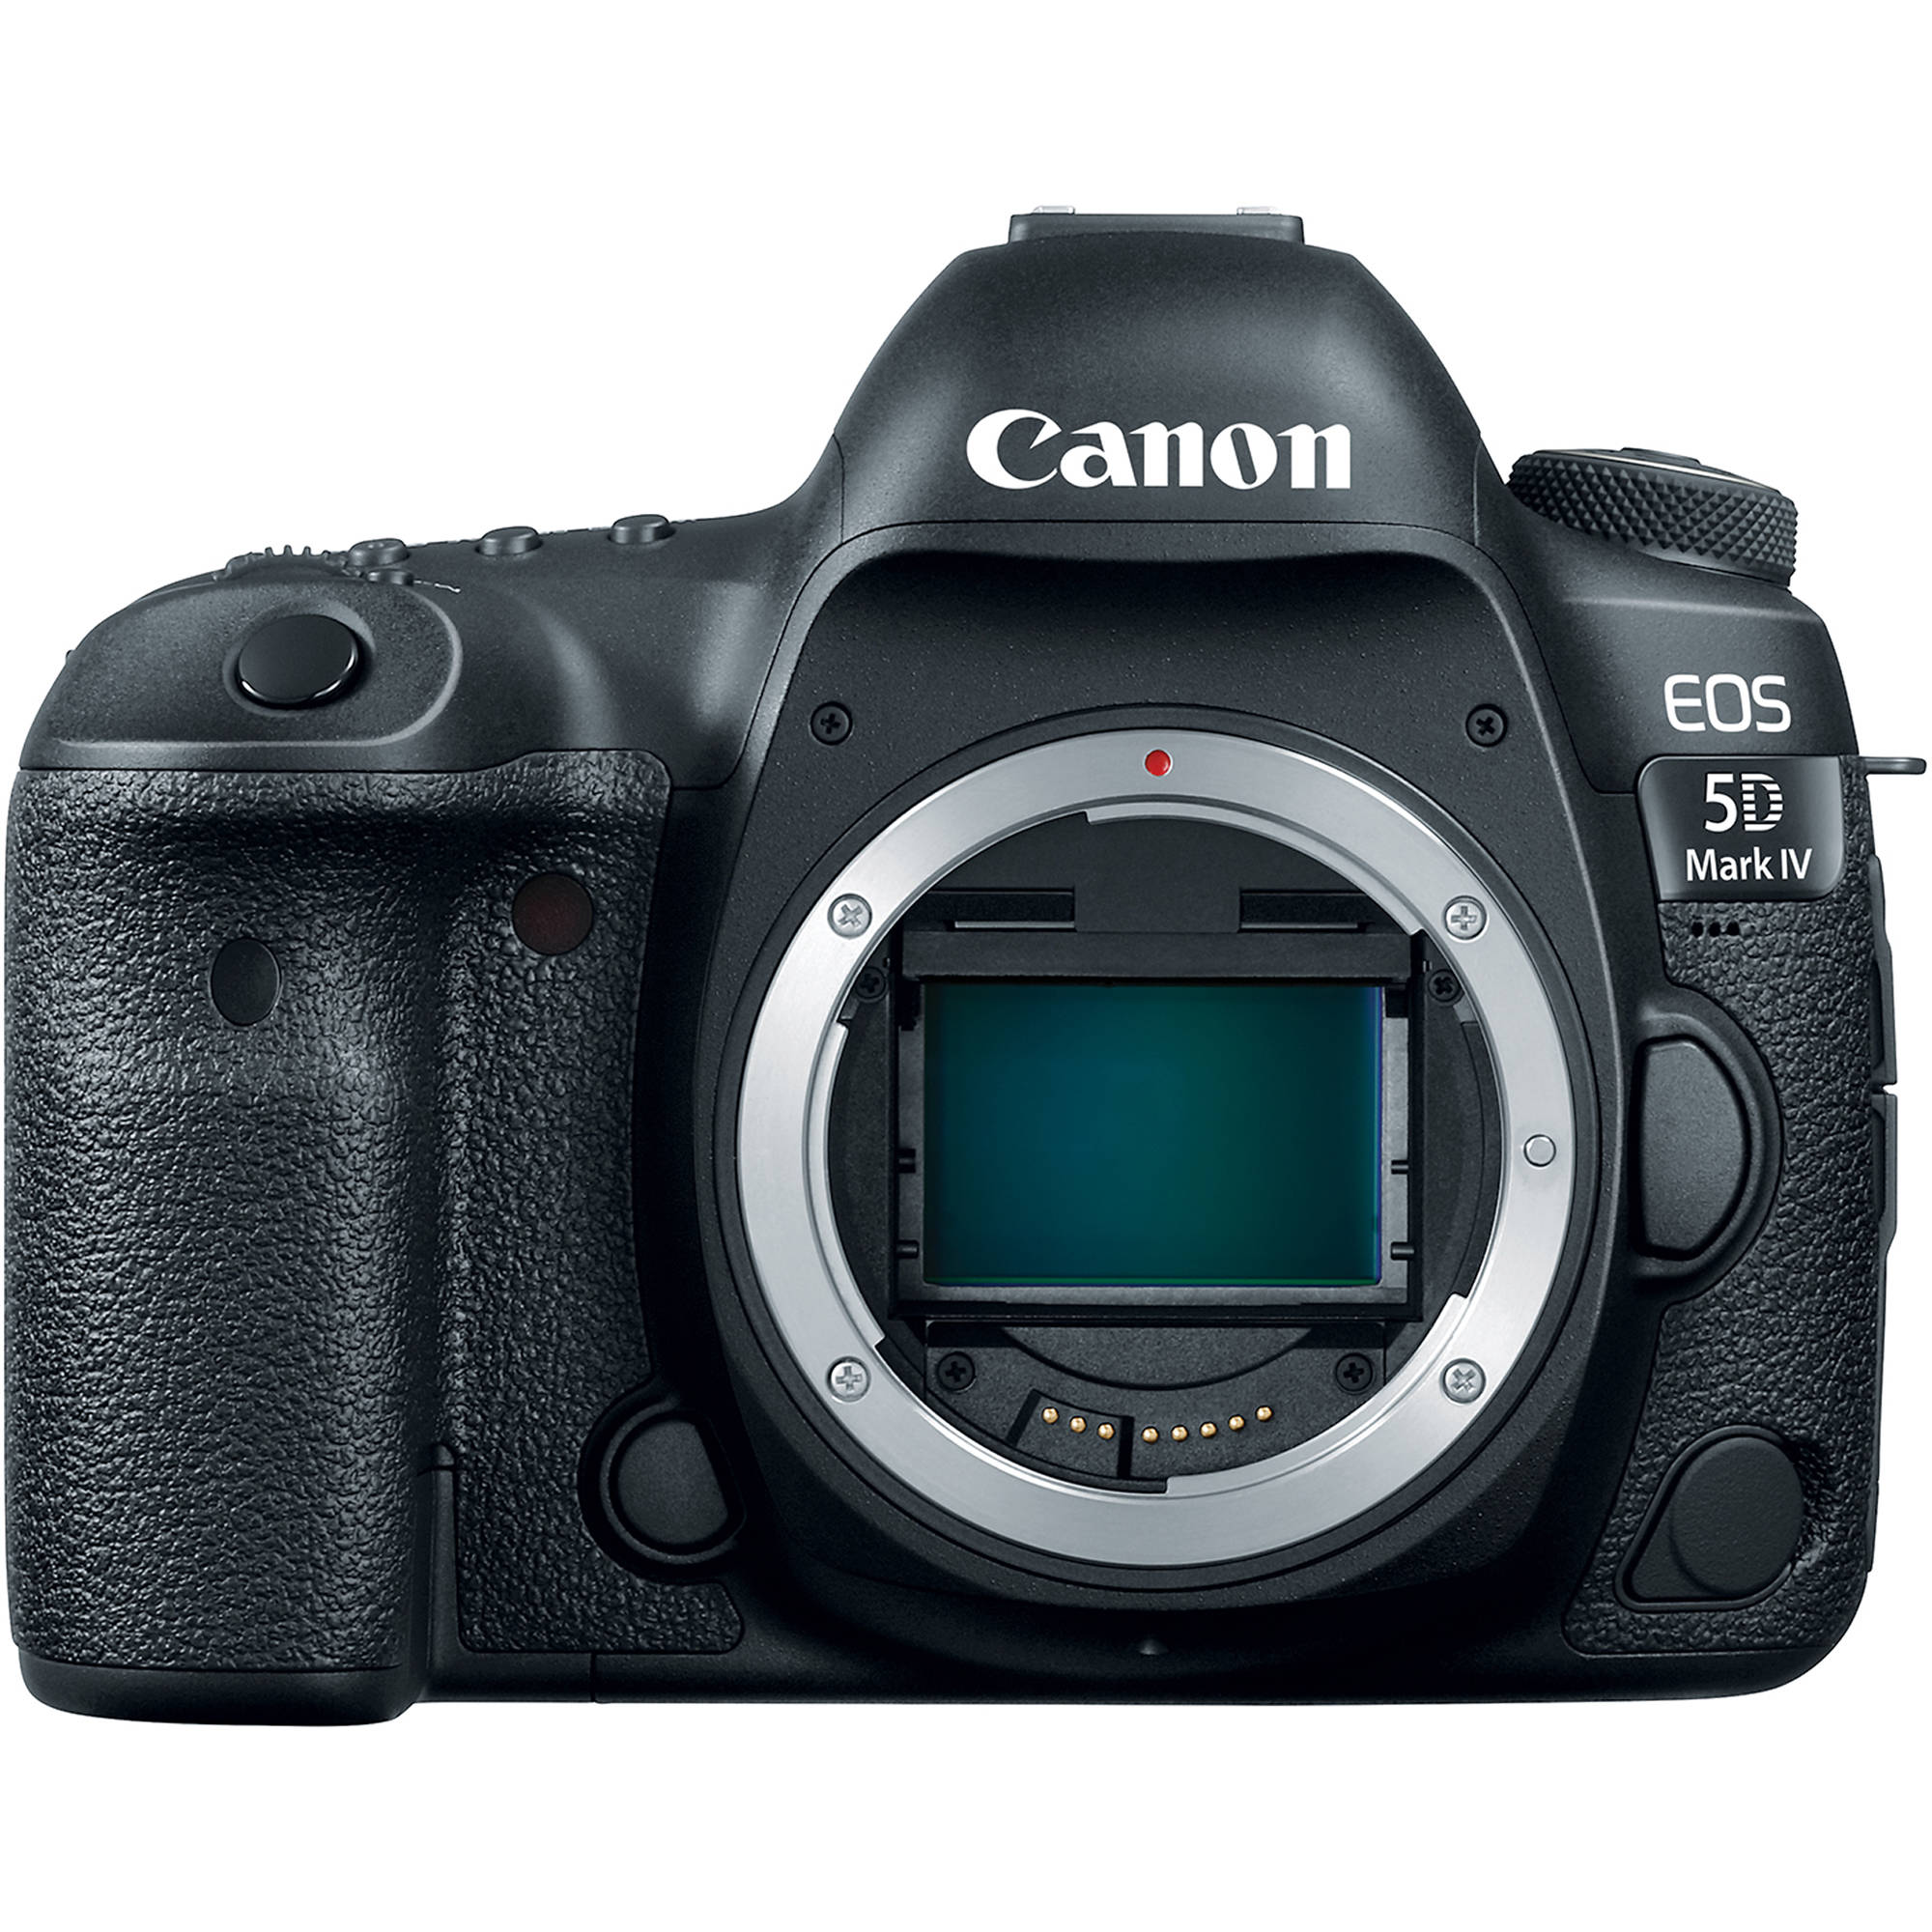 A Canon 5D mark IV camera